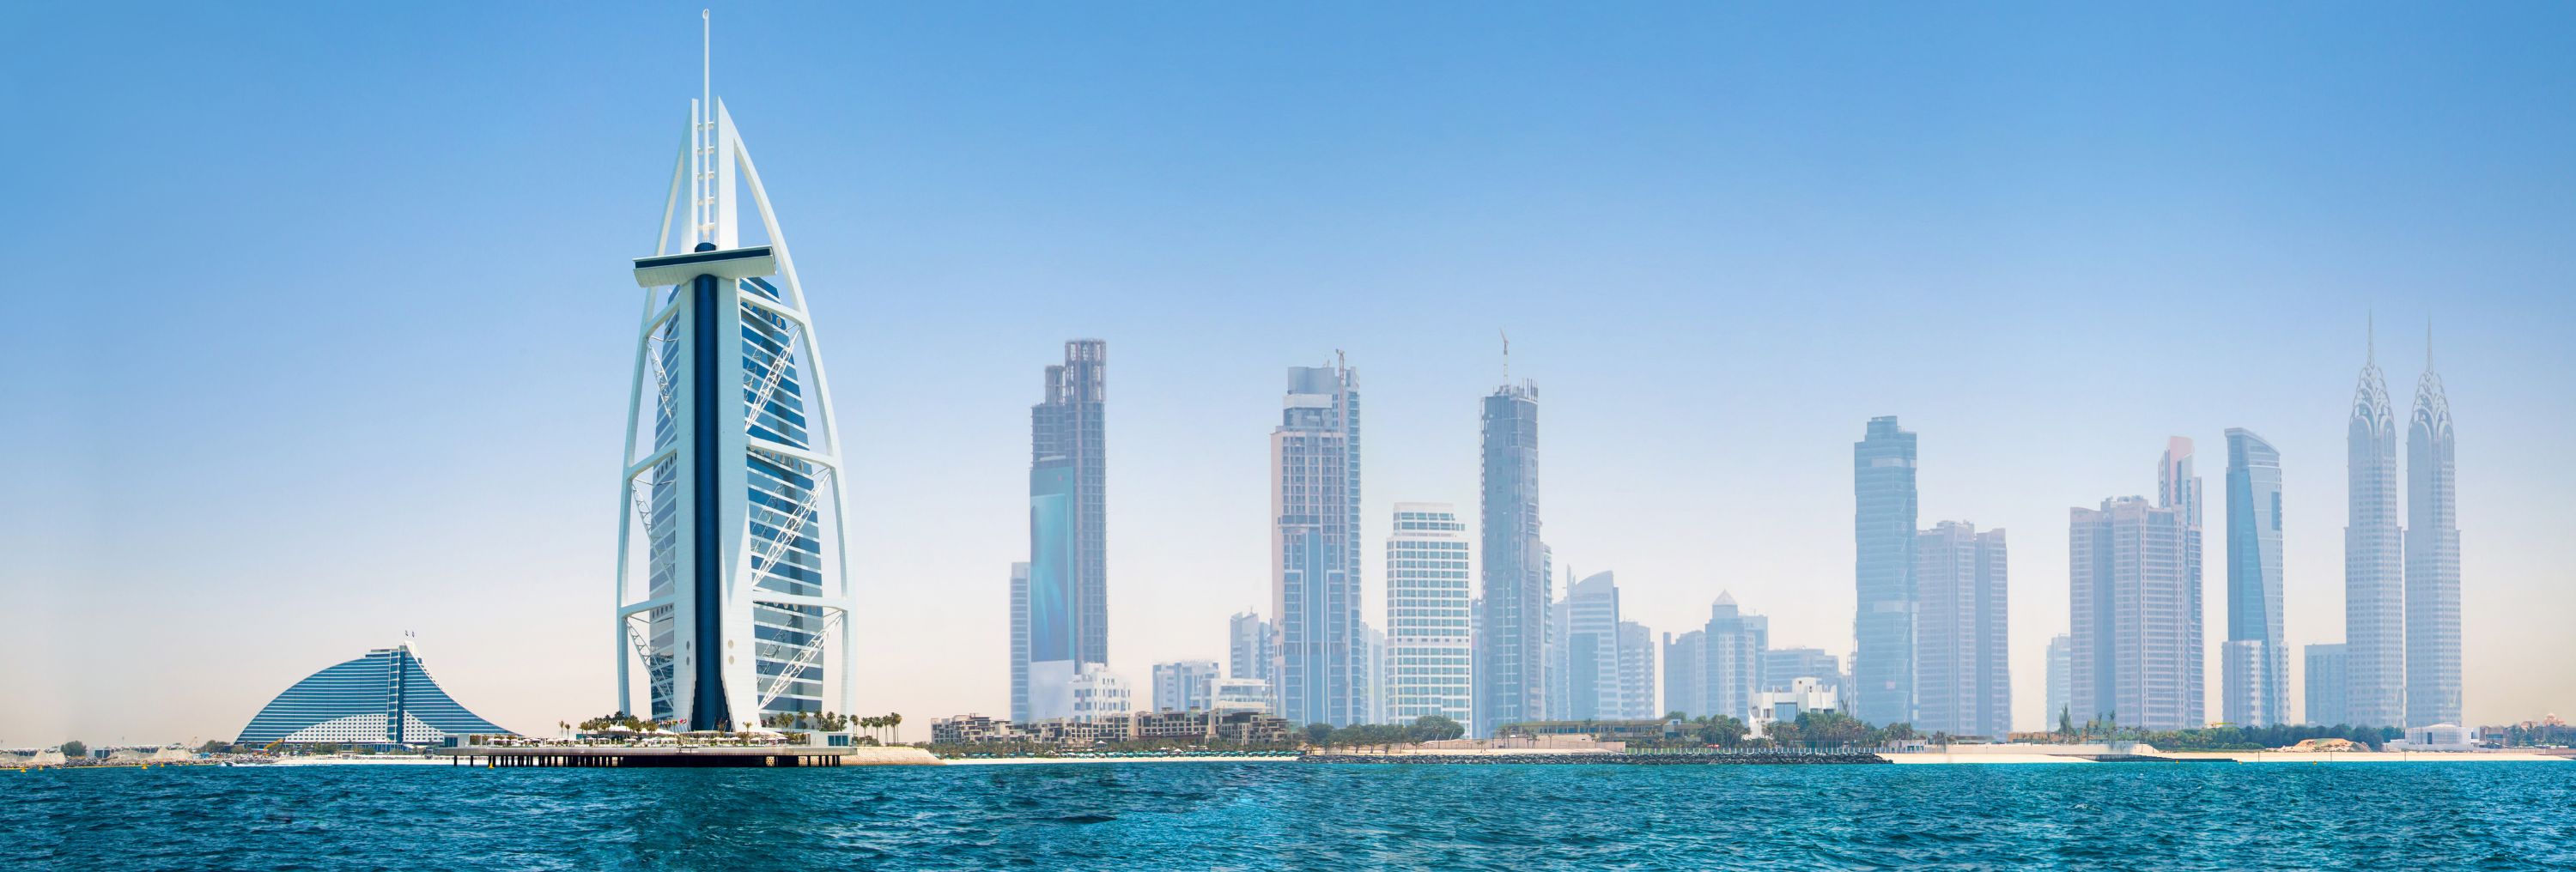 SEAZEN II : Expérience Digitale à 360° et Disponibilité cet Hiver aux Emirats Arabes Unis